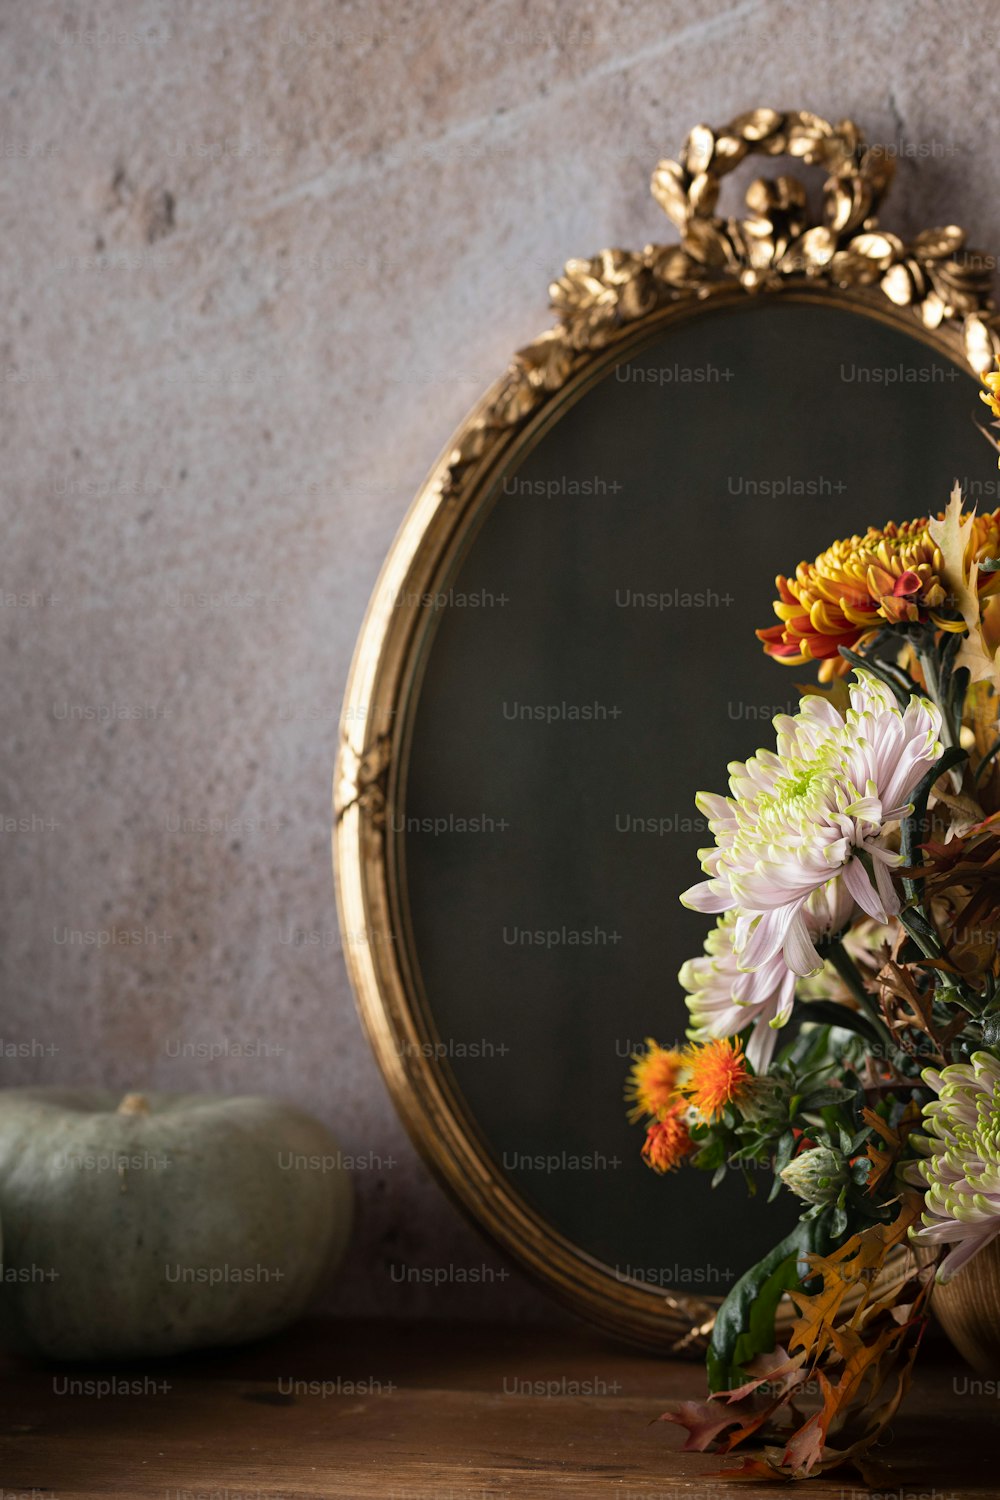 거울 앞에 앉아 있는 꽃다발